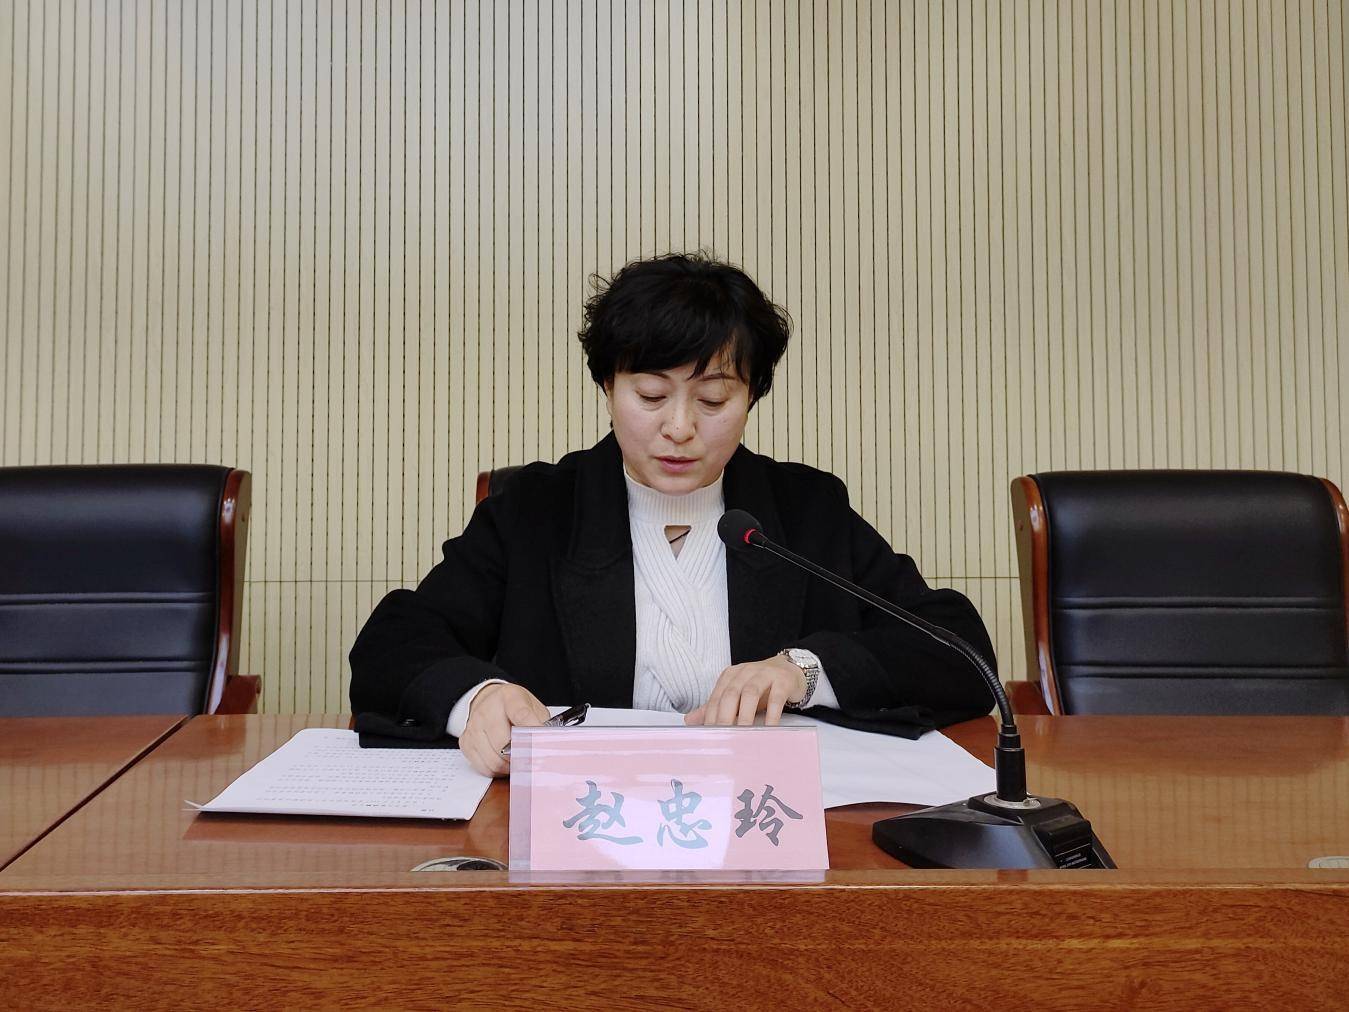 区司法局局长赵忠玲主持会议并讲话,在家局领导班子成员及各司法所,局